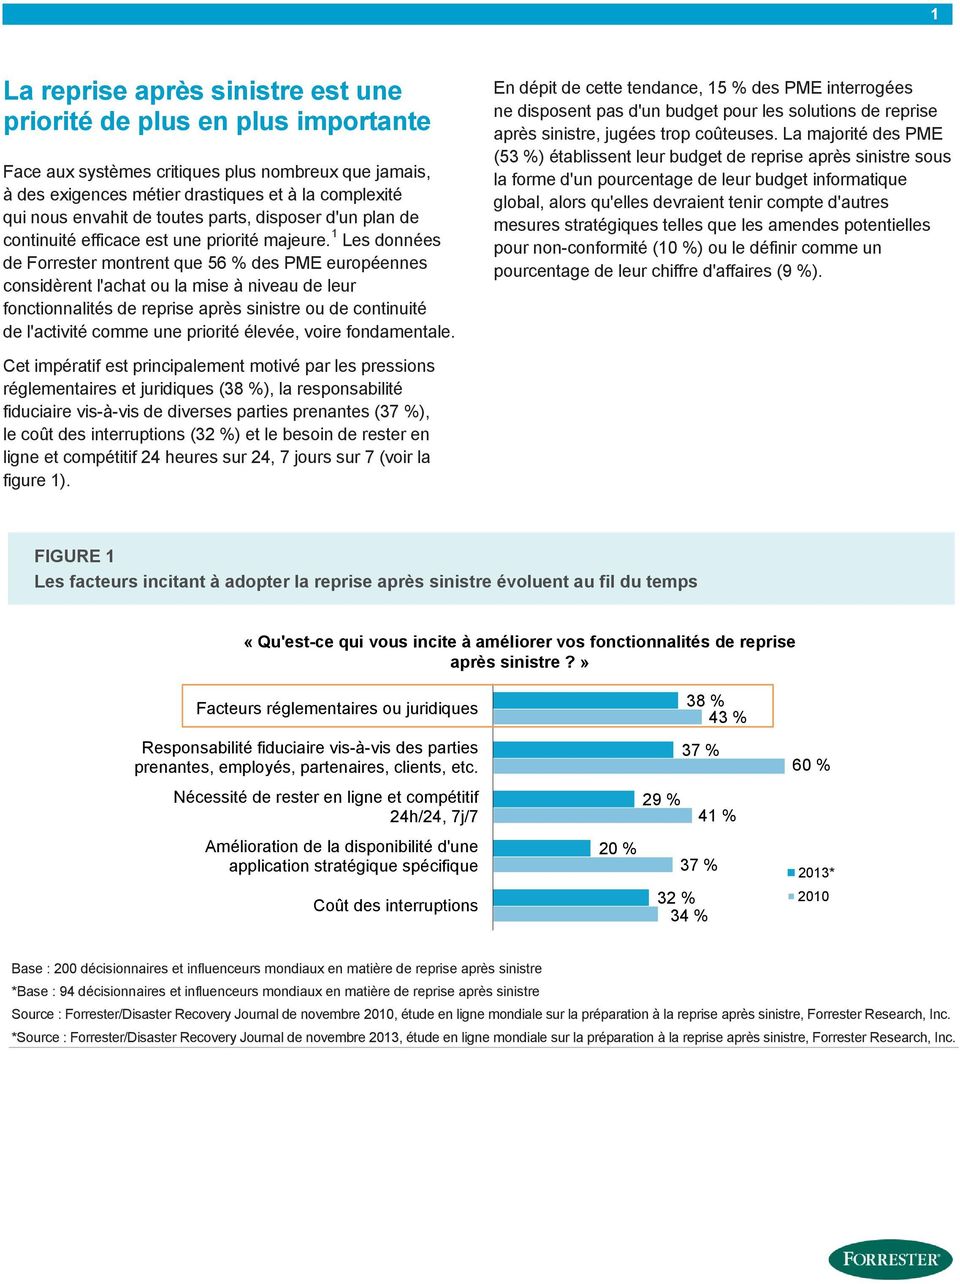 1 Les données de Forrester montrent que 56 % des PME européennes considèrent l'achat ou la mise à niveau de leur fonctionnalités de ou de continuité de l'activité comme une priorité élevée, voire